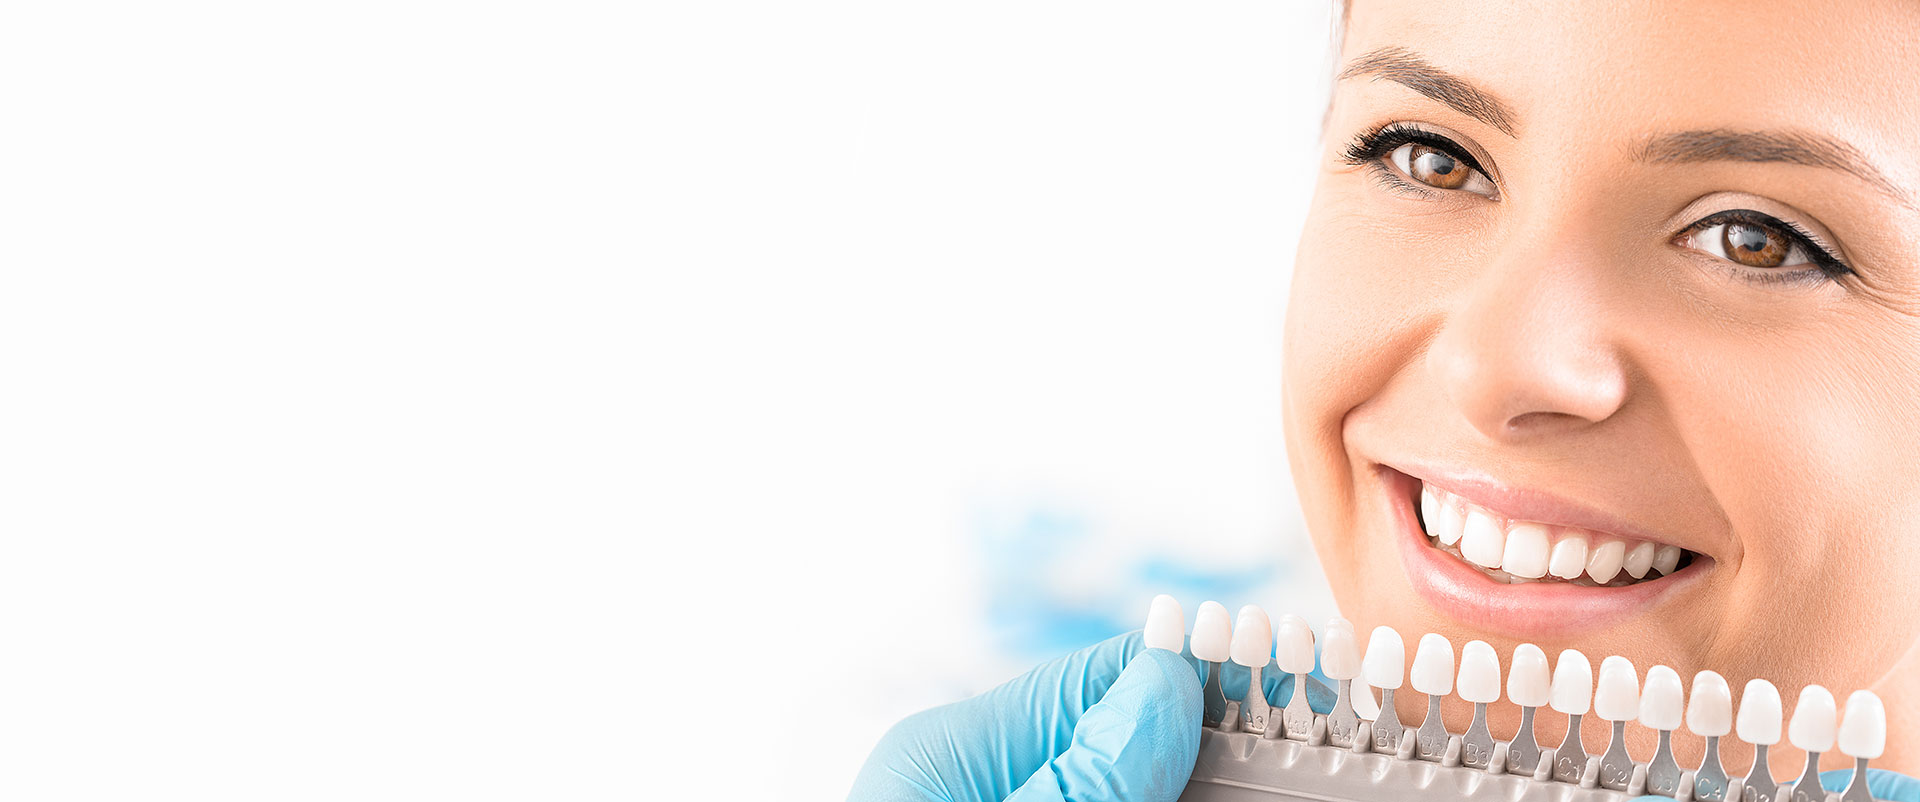 Les services du prothesiste dentaire